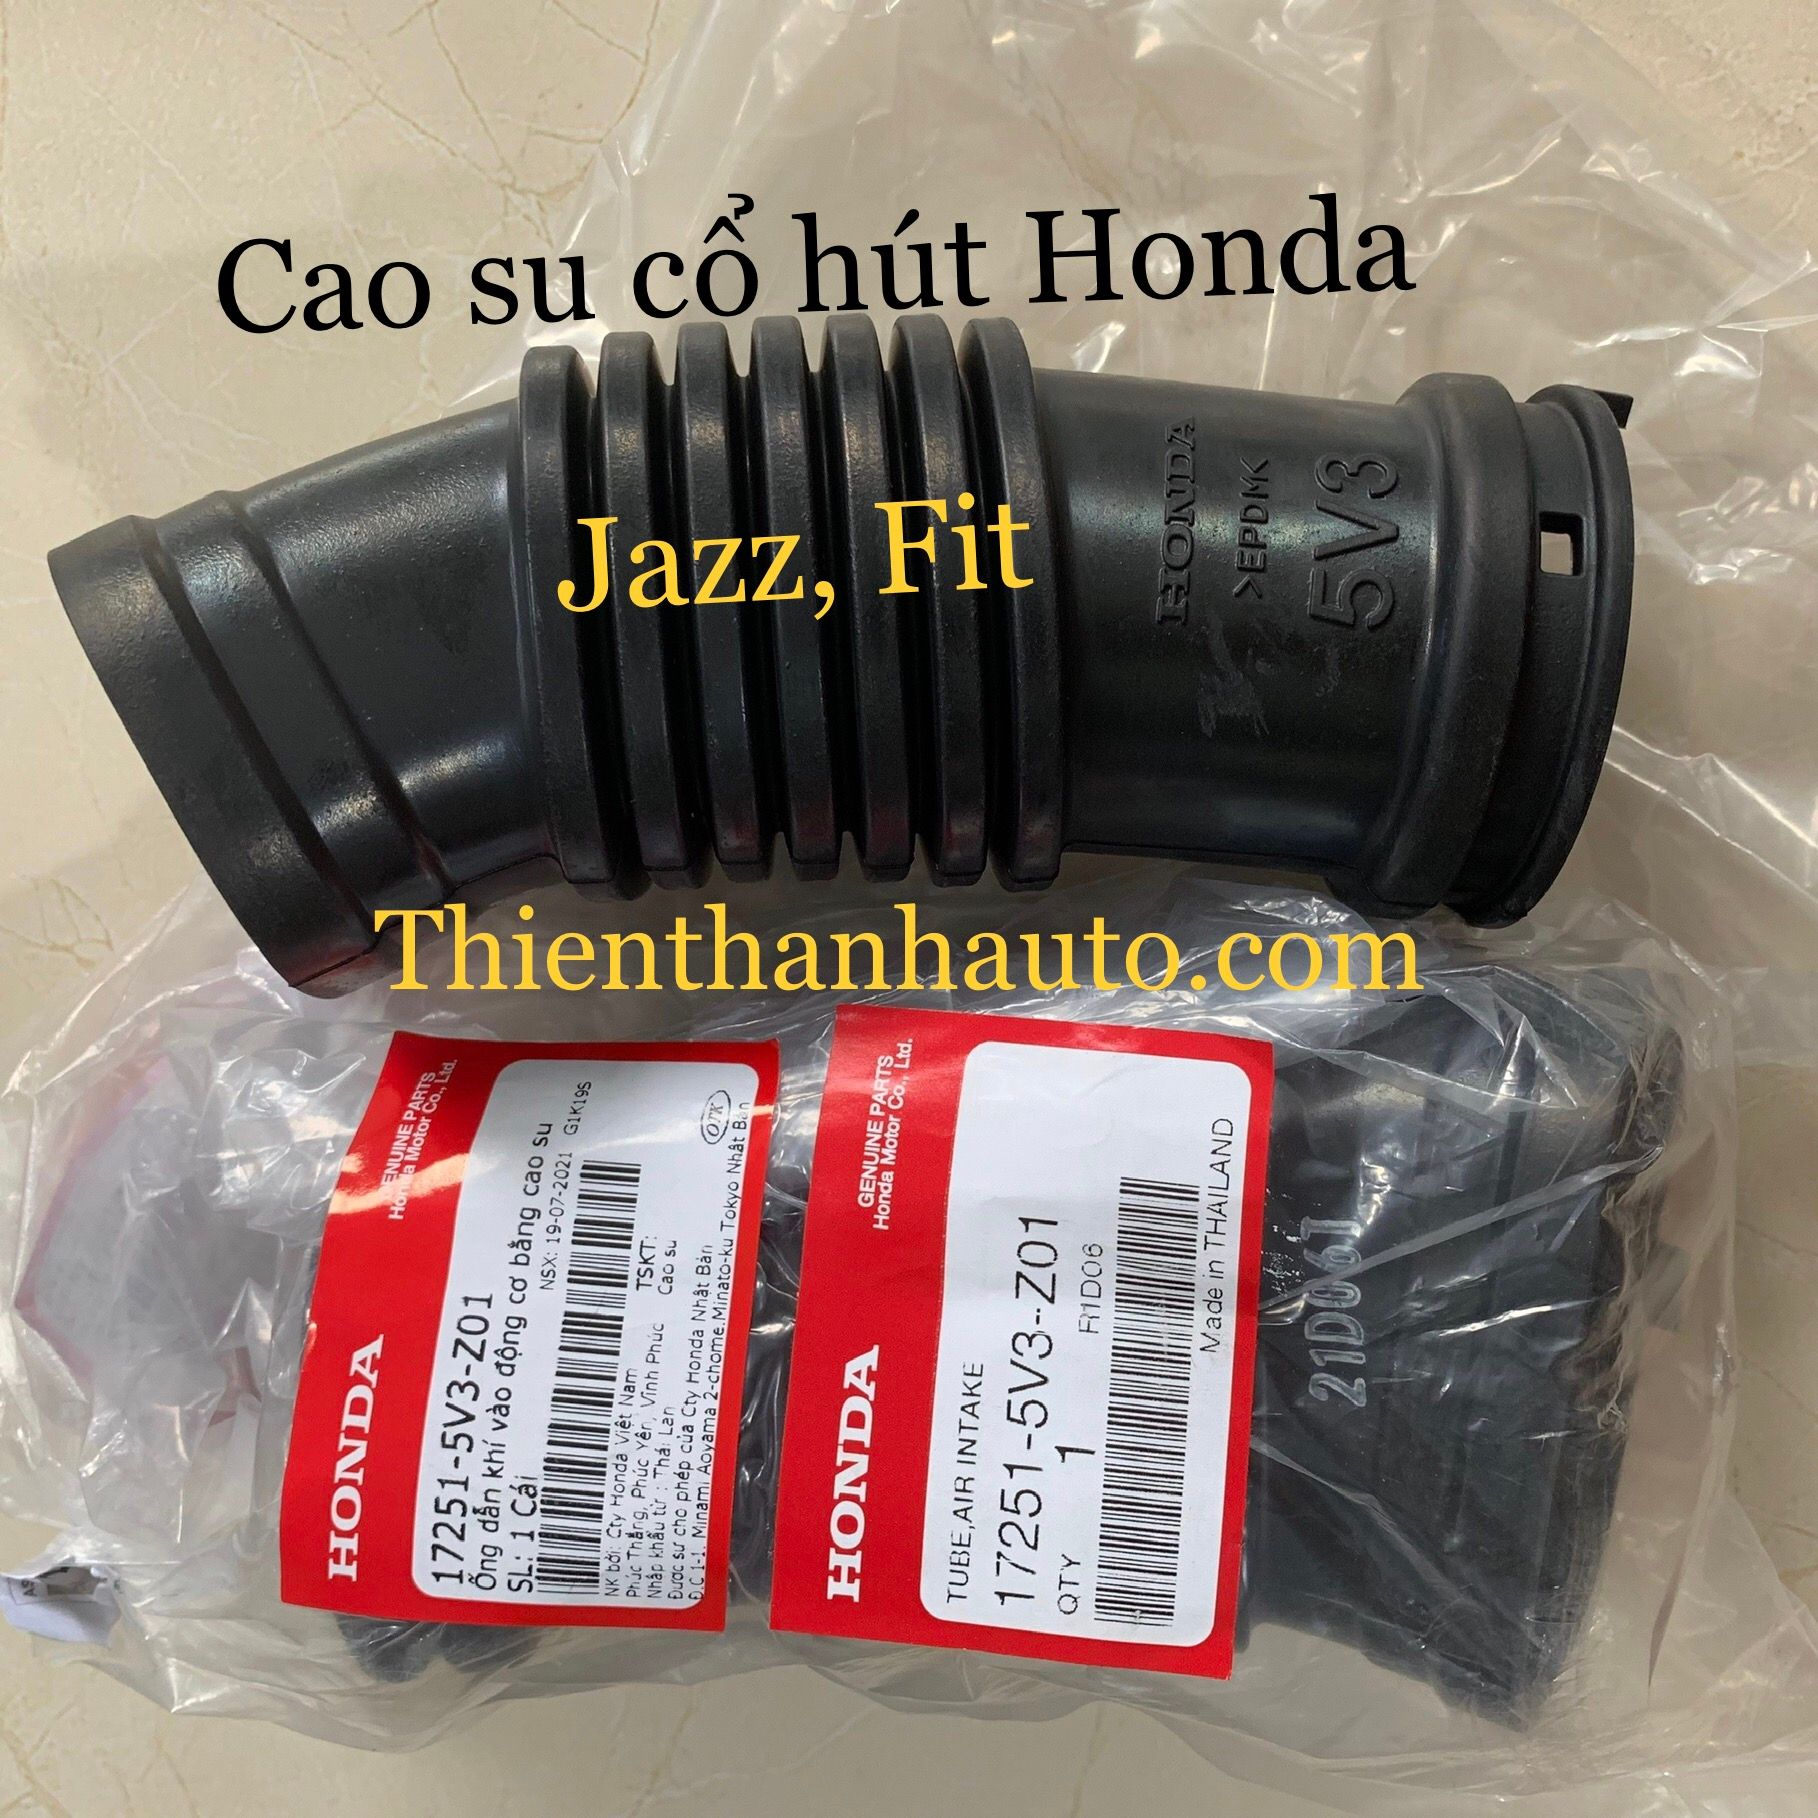 Cao su cổ hút - Ống gió bầu le Honda Jazz, Fit chính hãng - Thienthanhauto.com